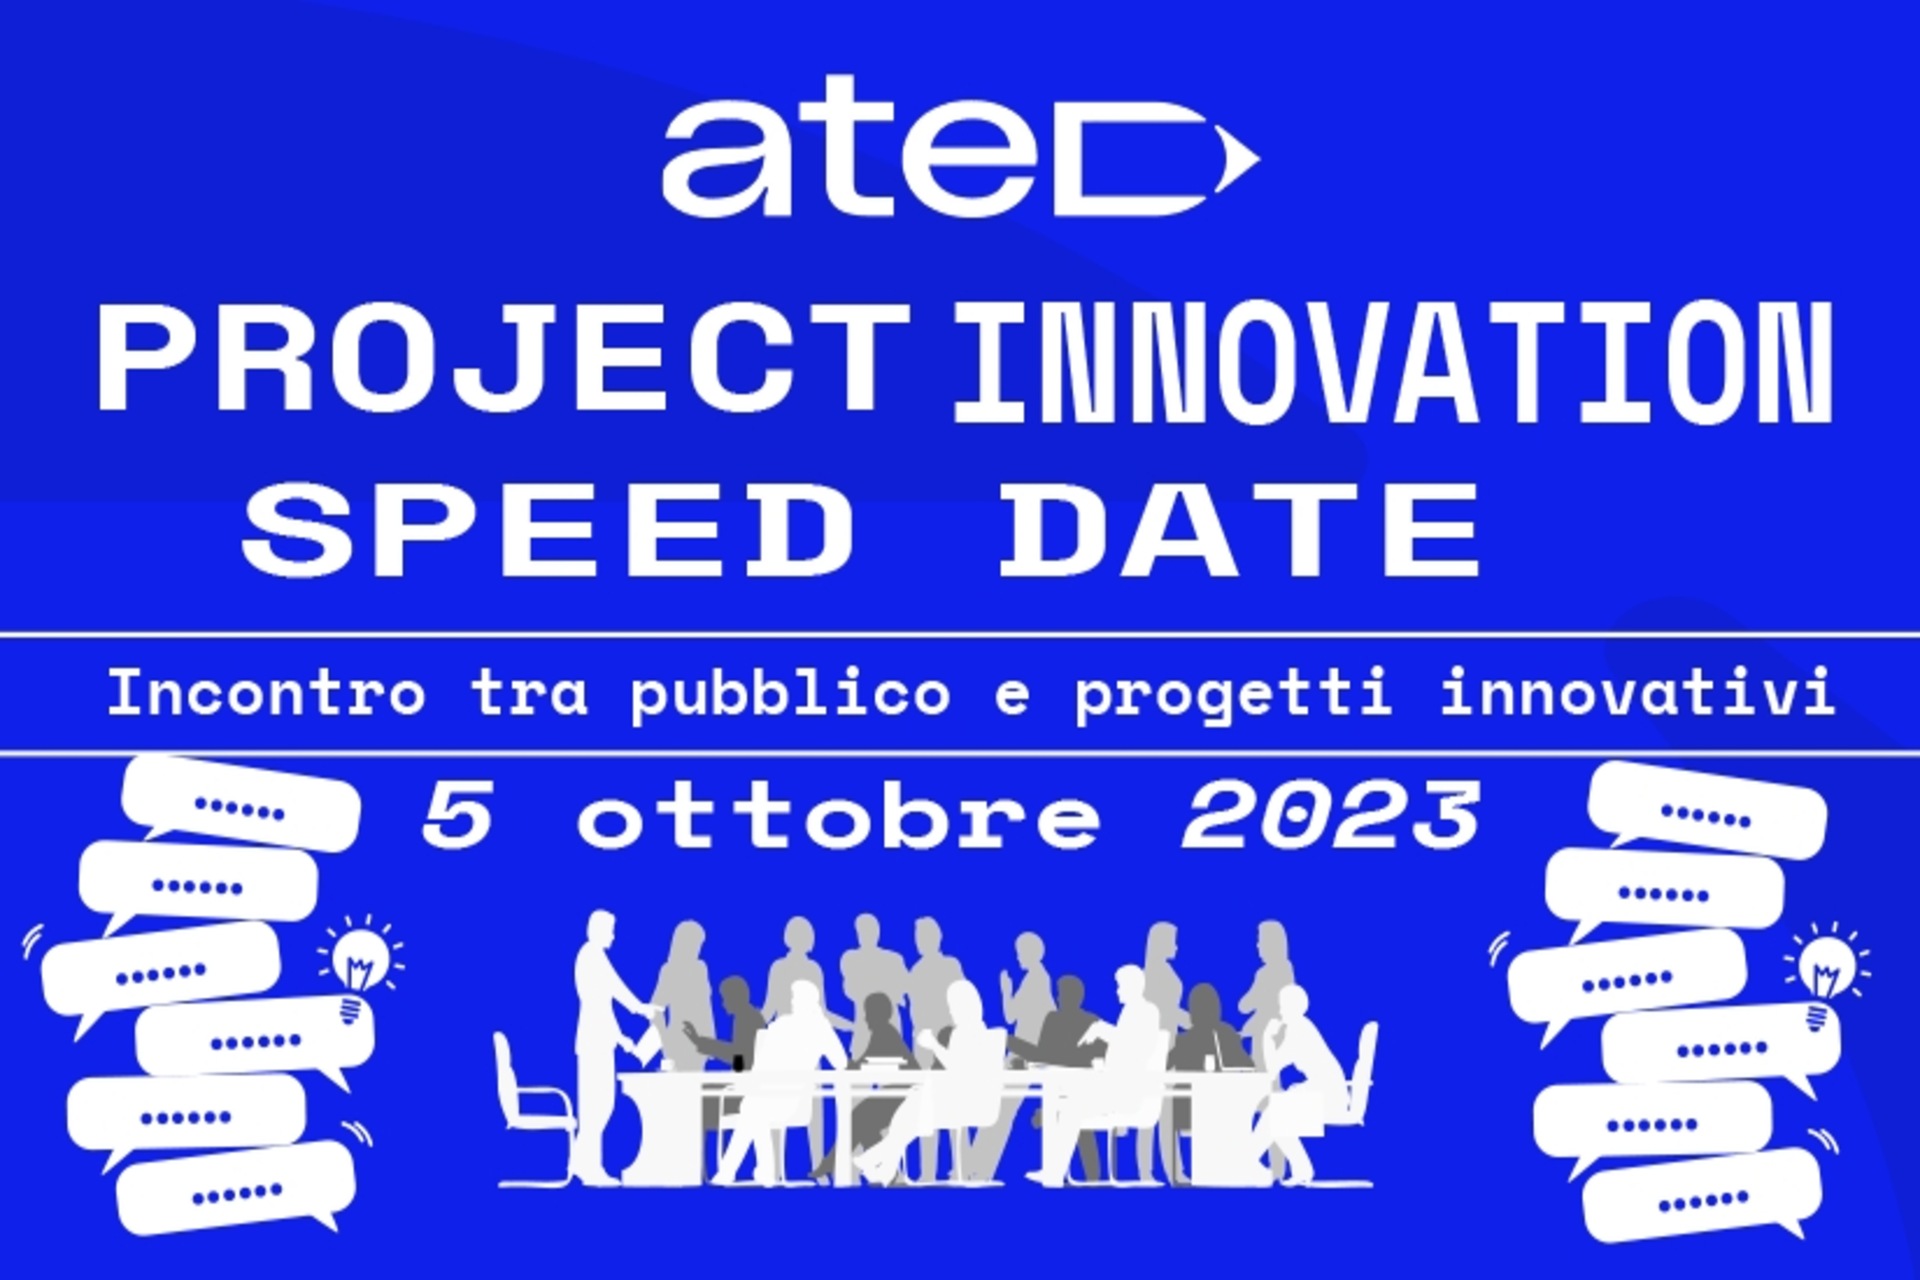 ATED Project Innovation Speed ​​​​Date: plagát a kľúčový vizuál